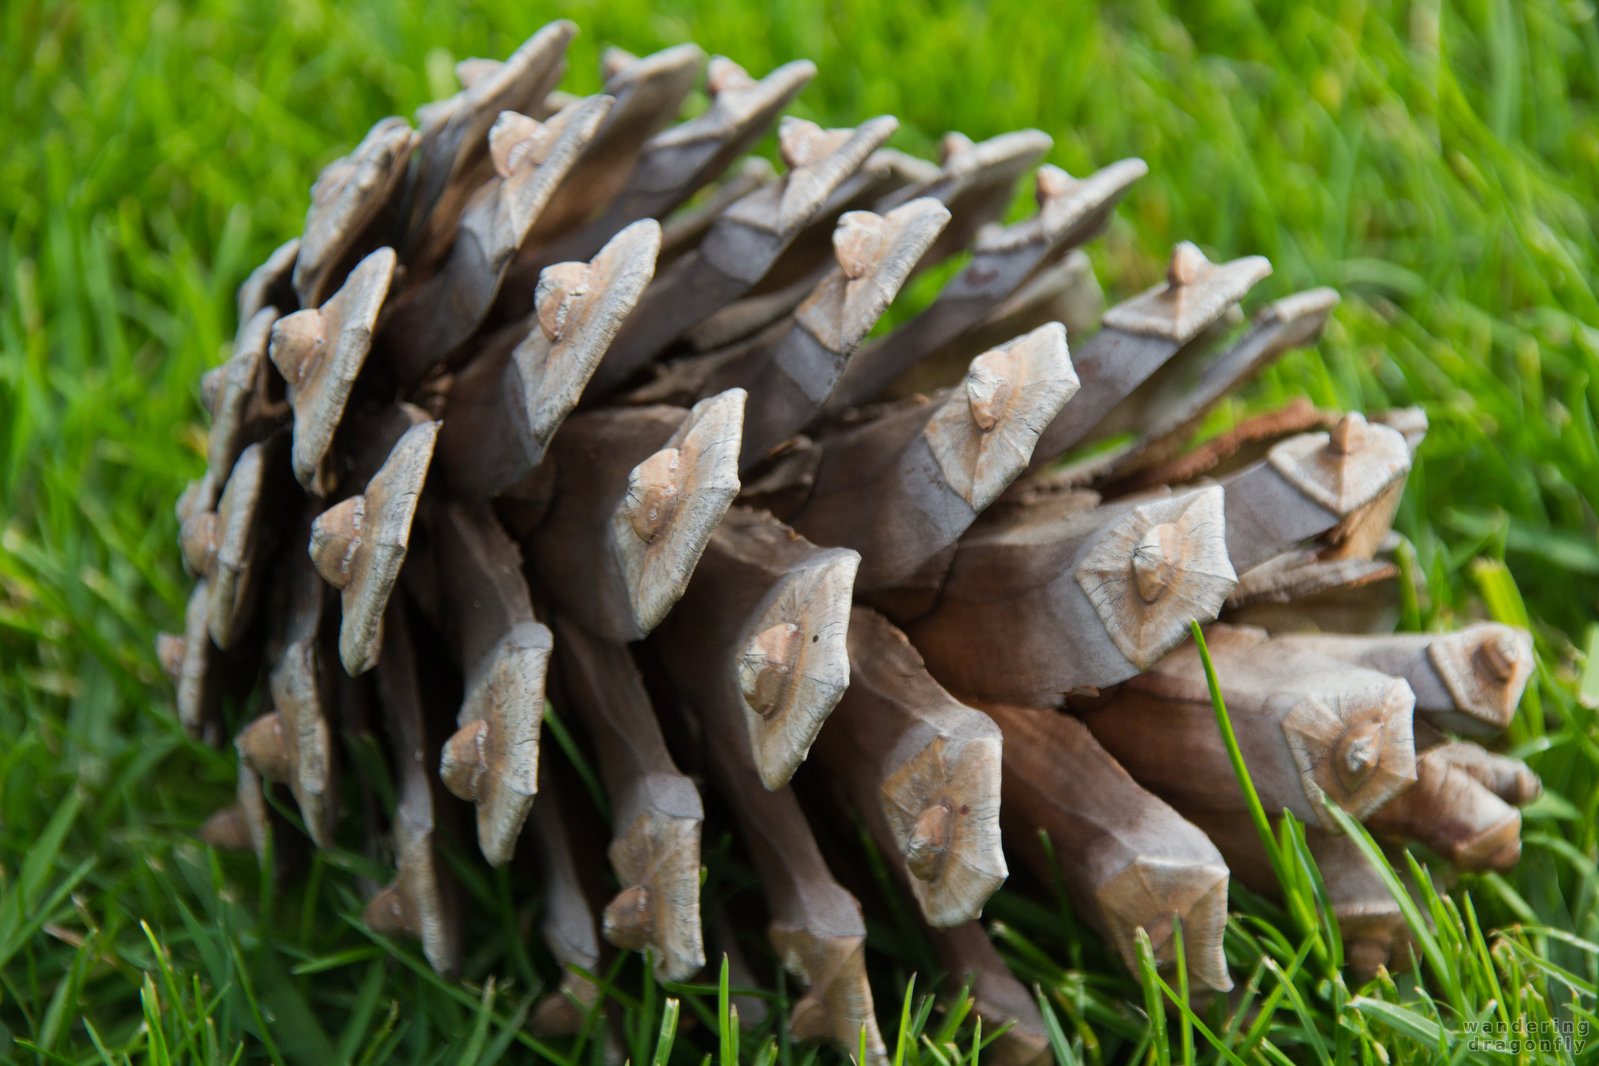 Pine cone in the grass -- grass, pine cone